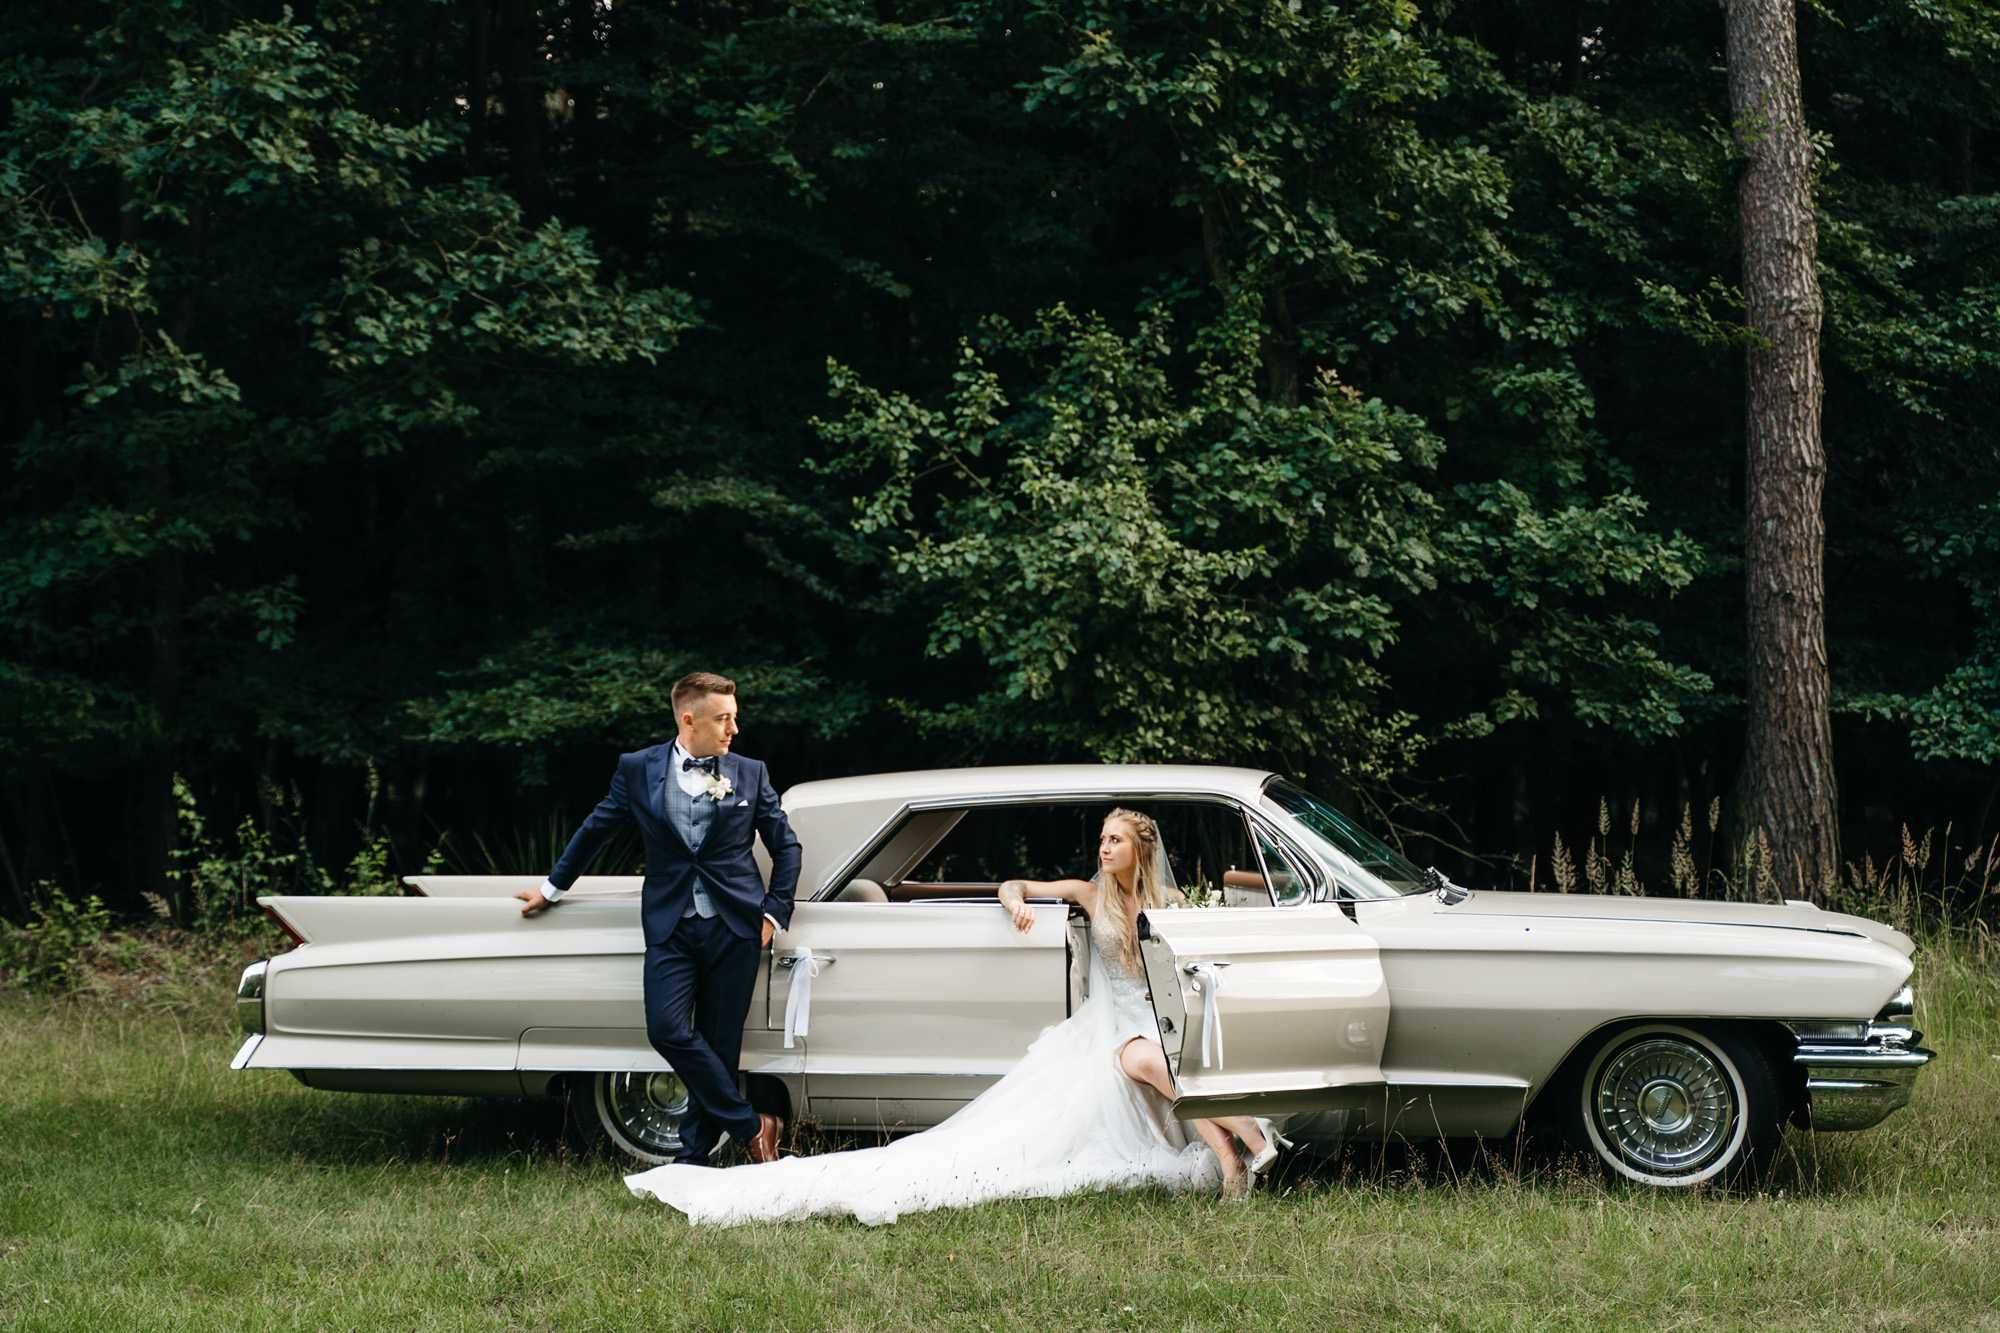 Auto do ślubu samochód do ślubu Auto na wesele Cadillac Deville Klasyk